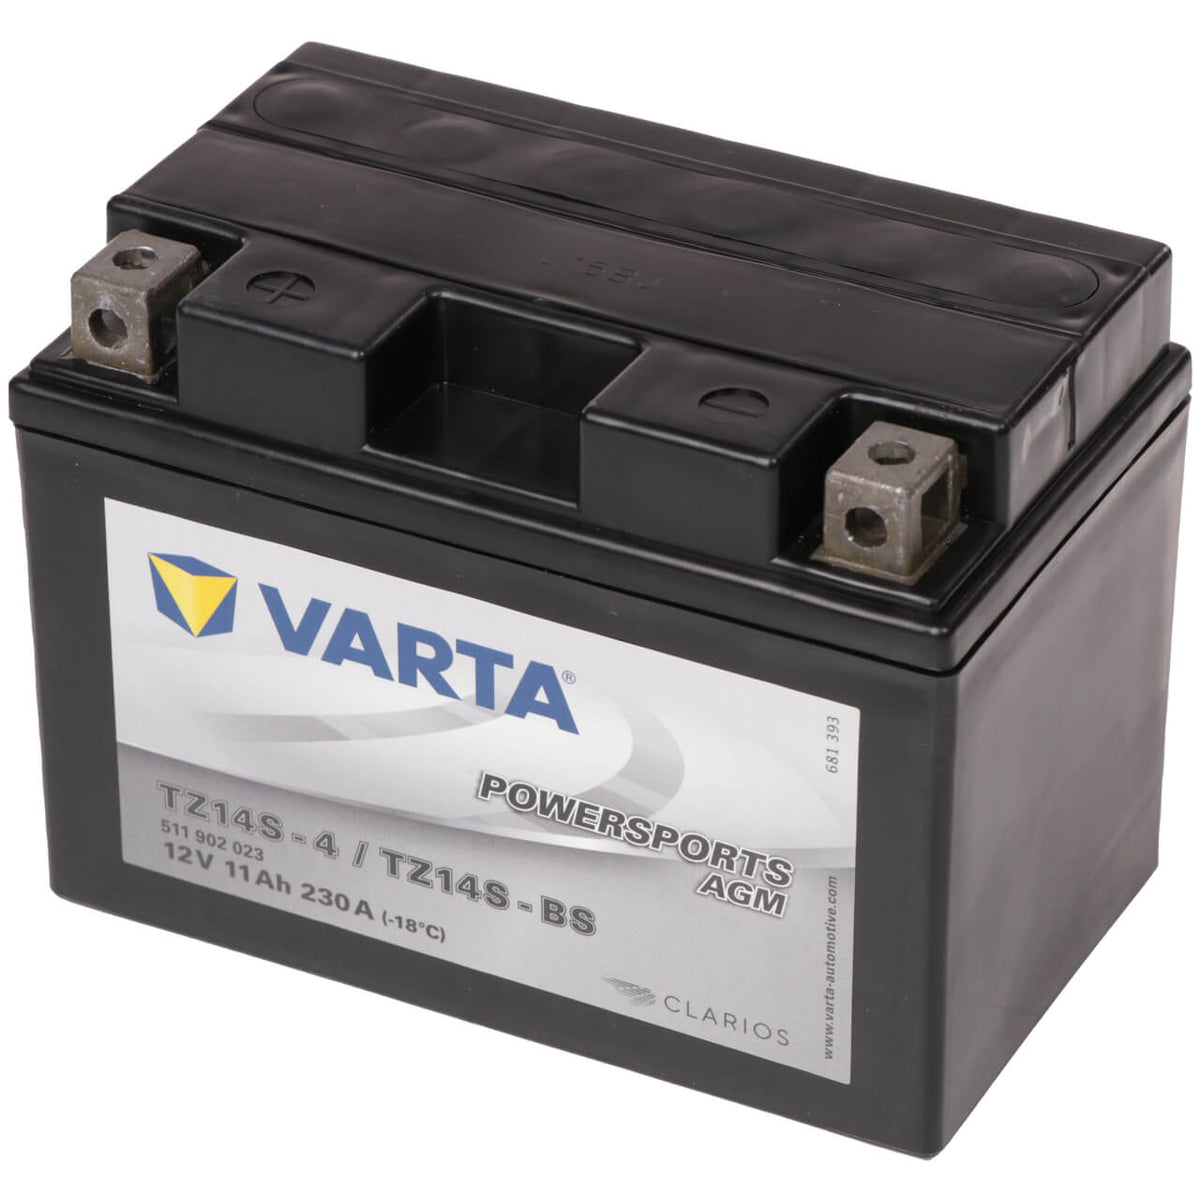 Motorradbatterie Varta Powersports AGM YTZ14S-BS 511902 12V 11Ah Seite rechts